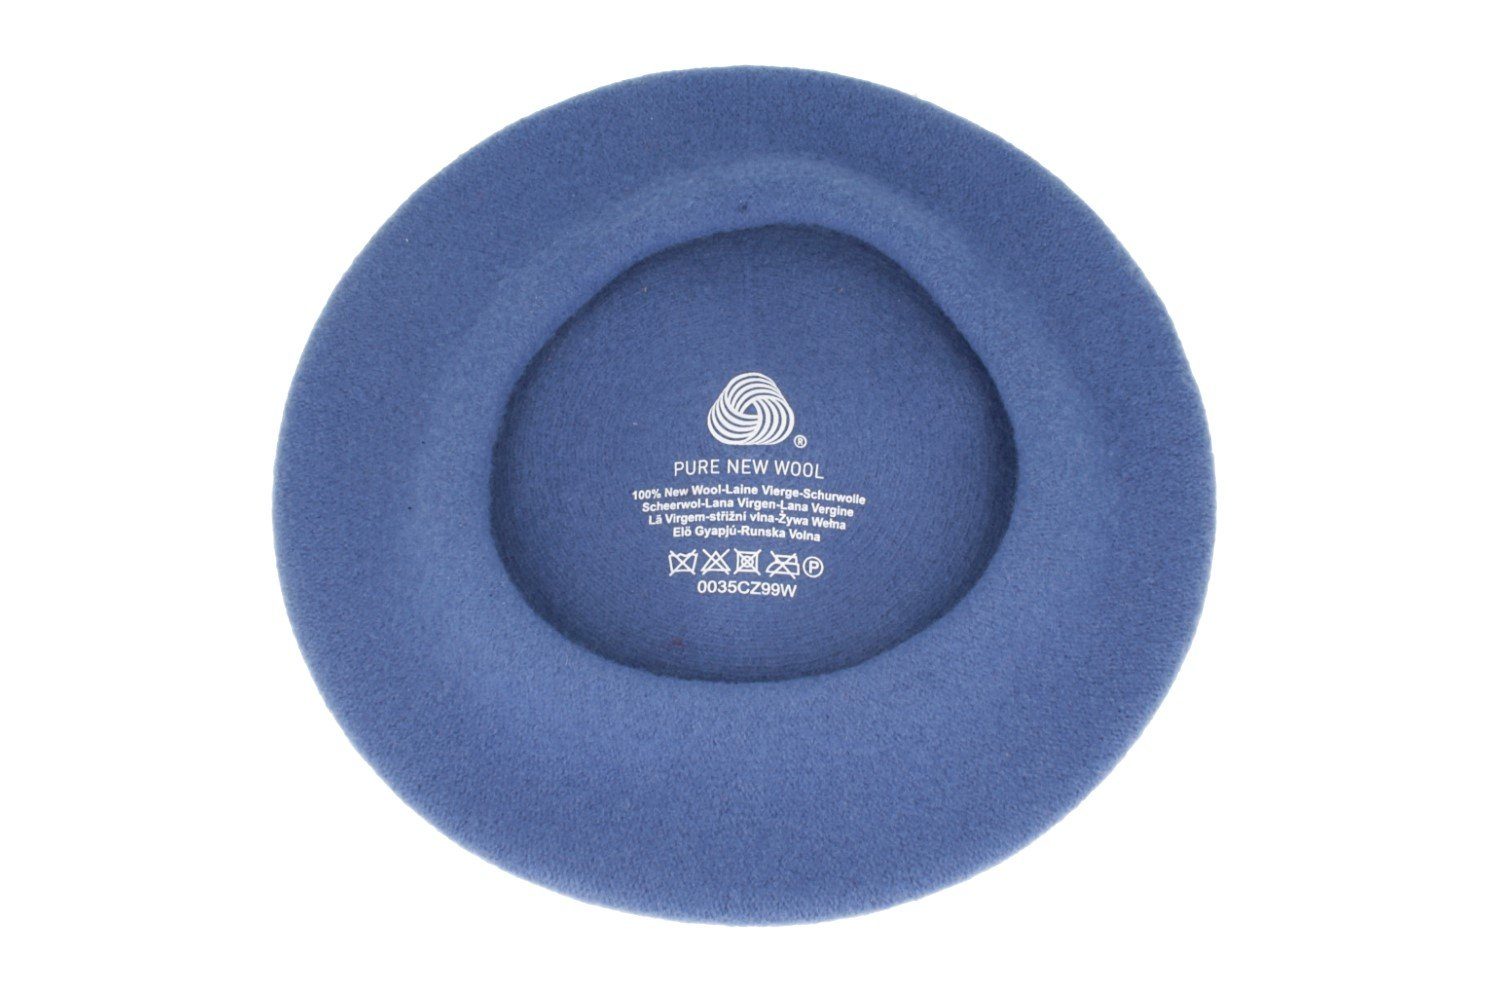 Loevenich Baskenmütze meliert aus Wolle bleu 122/051115